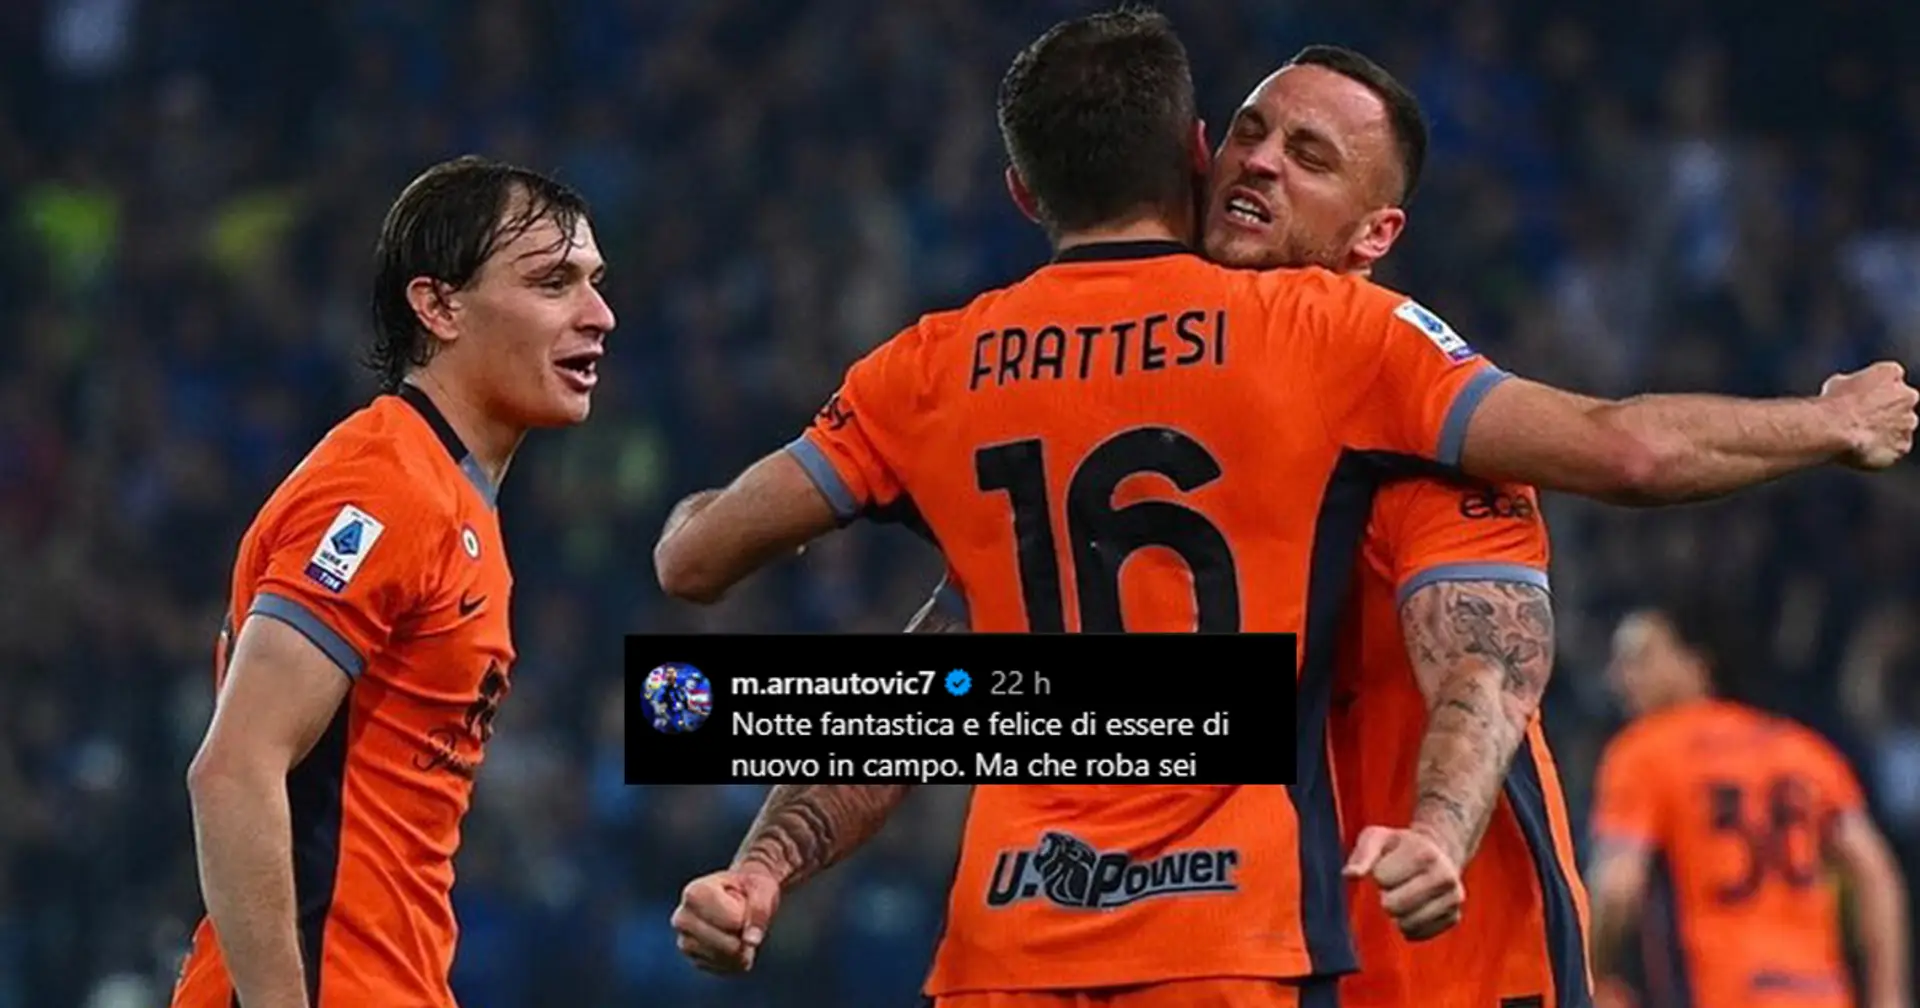 Frattesi segna all'ultimo contro l'Udinese, il ritrovato Arnautovic lo applaude sui social: "Ma che roba sei!"